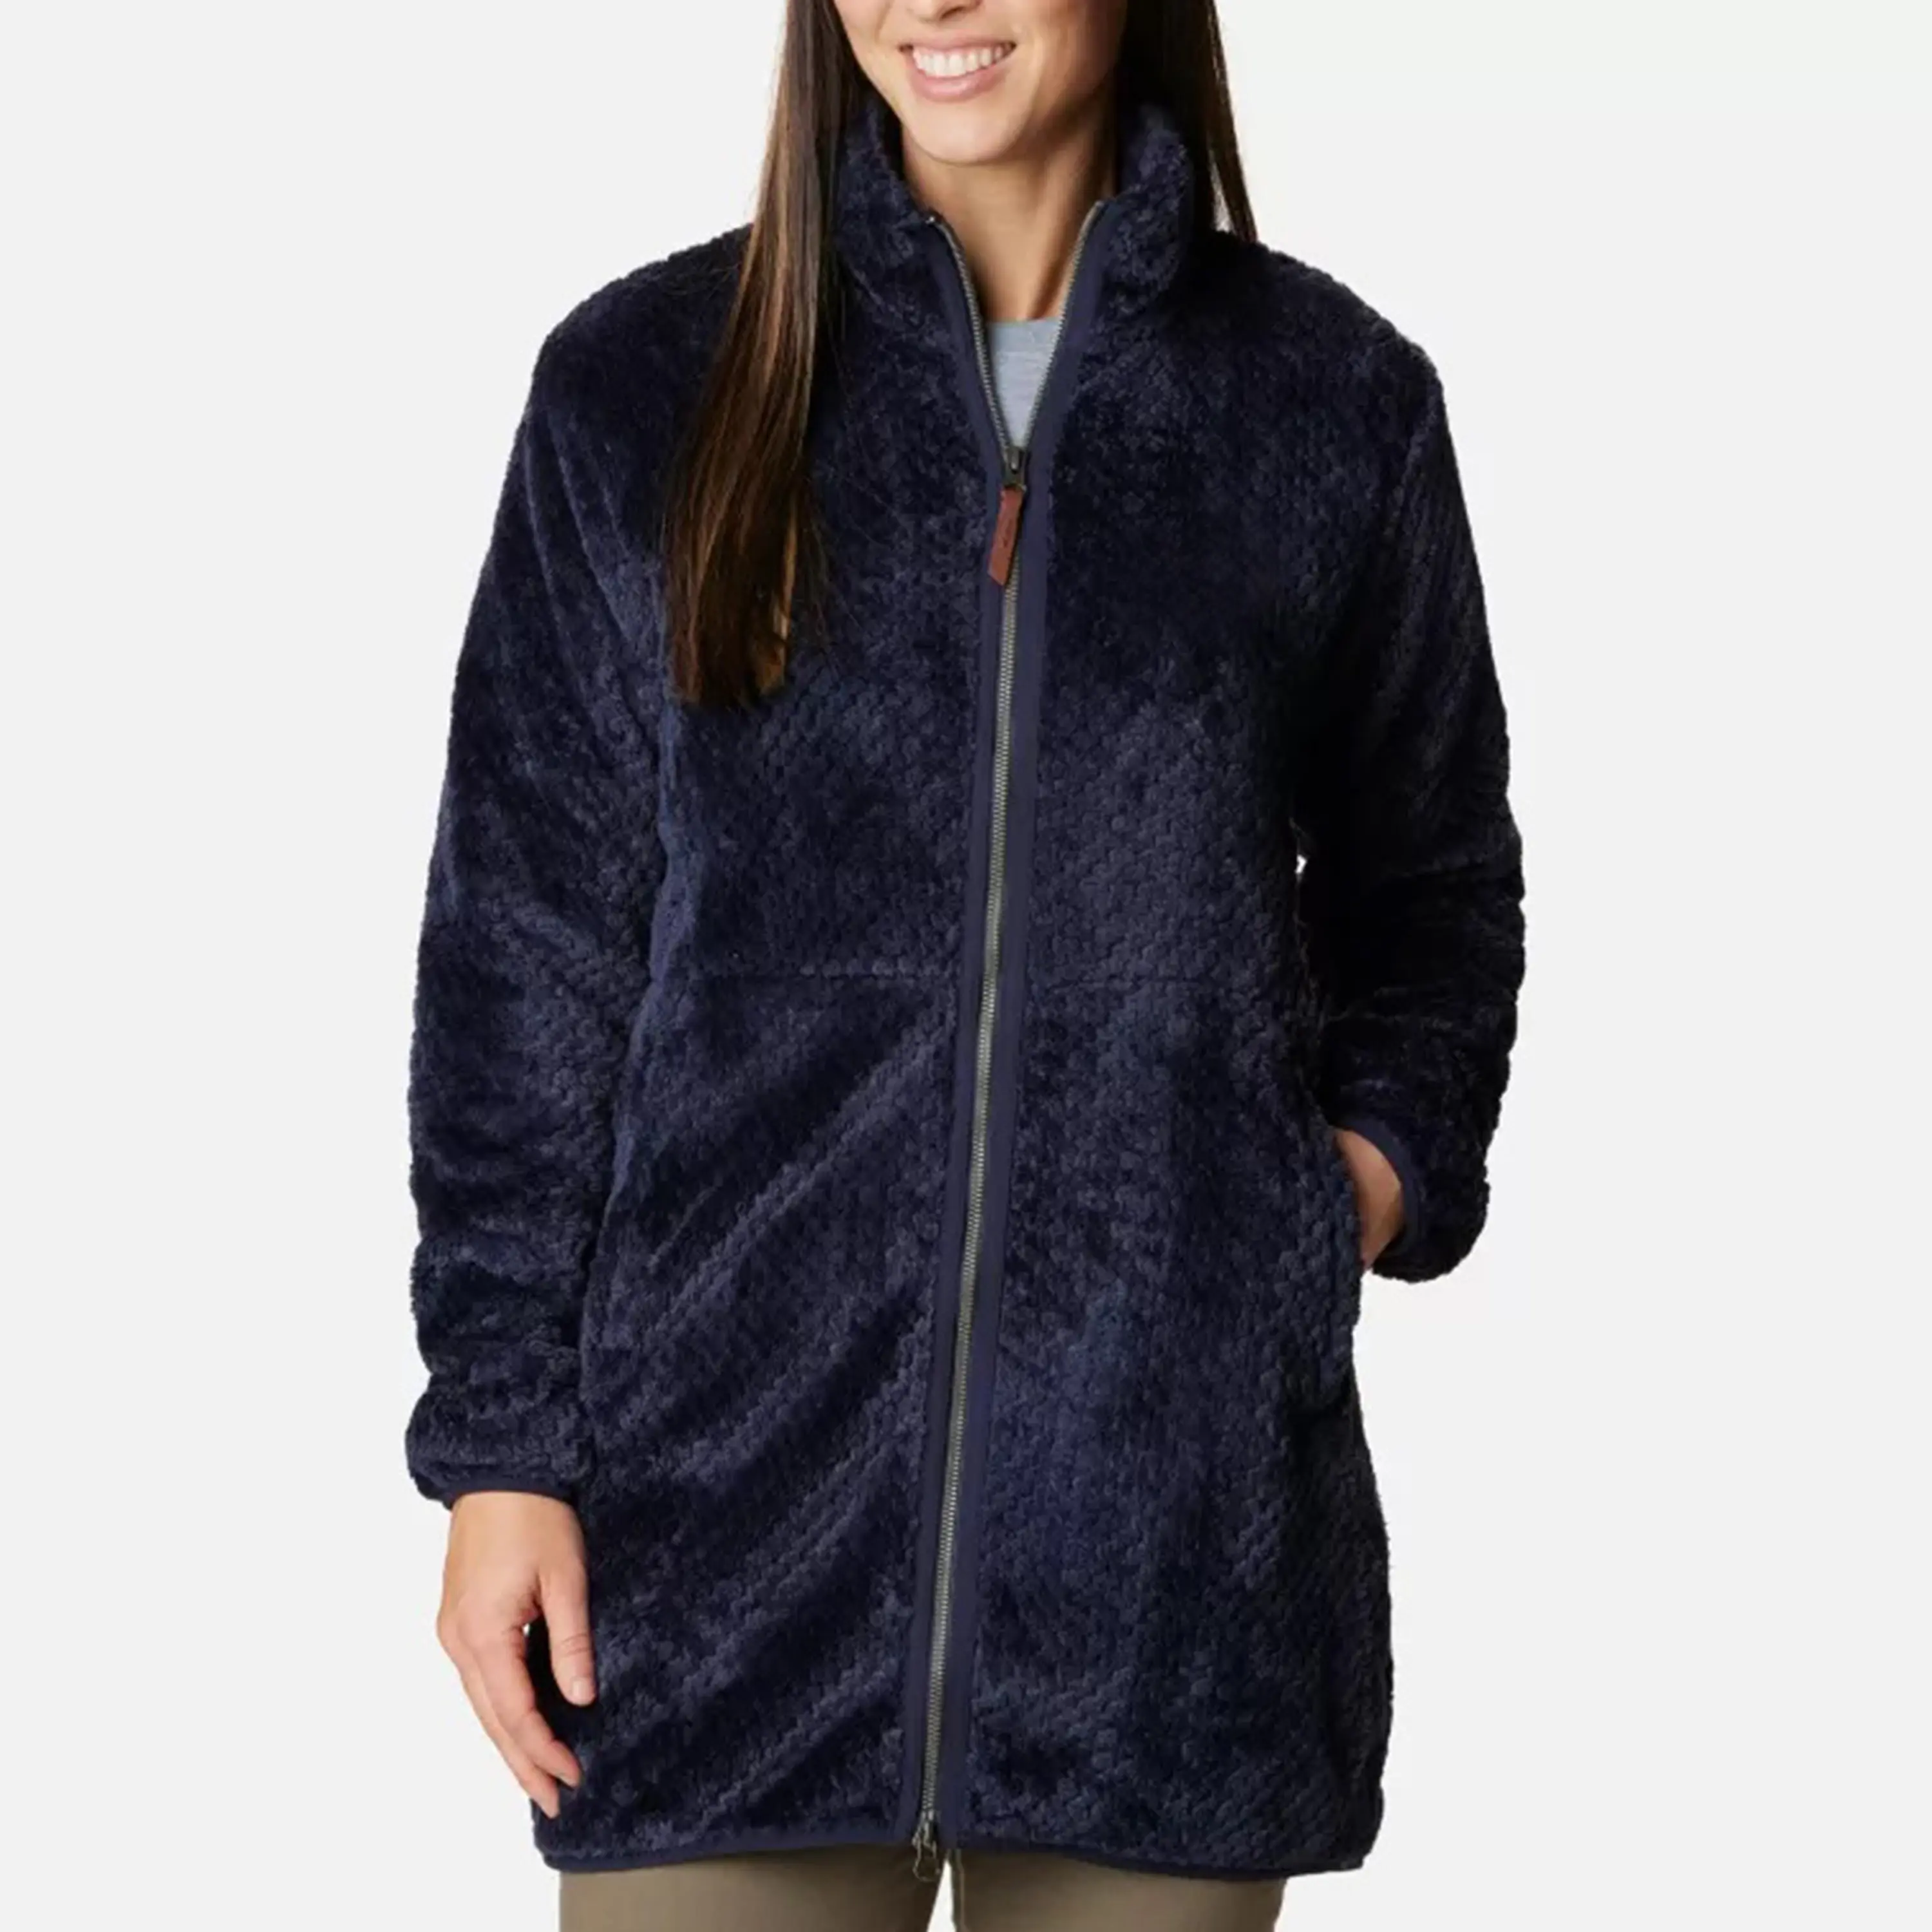 OEM कस्टम निर्माता फैक्टरी फैशन नई कस्टम महिला ध्रुवीय ऊन लाइन वाला फ्रंट फुल-ज़िप जैकेट फर कोट